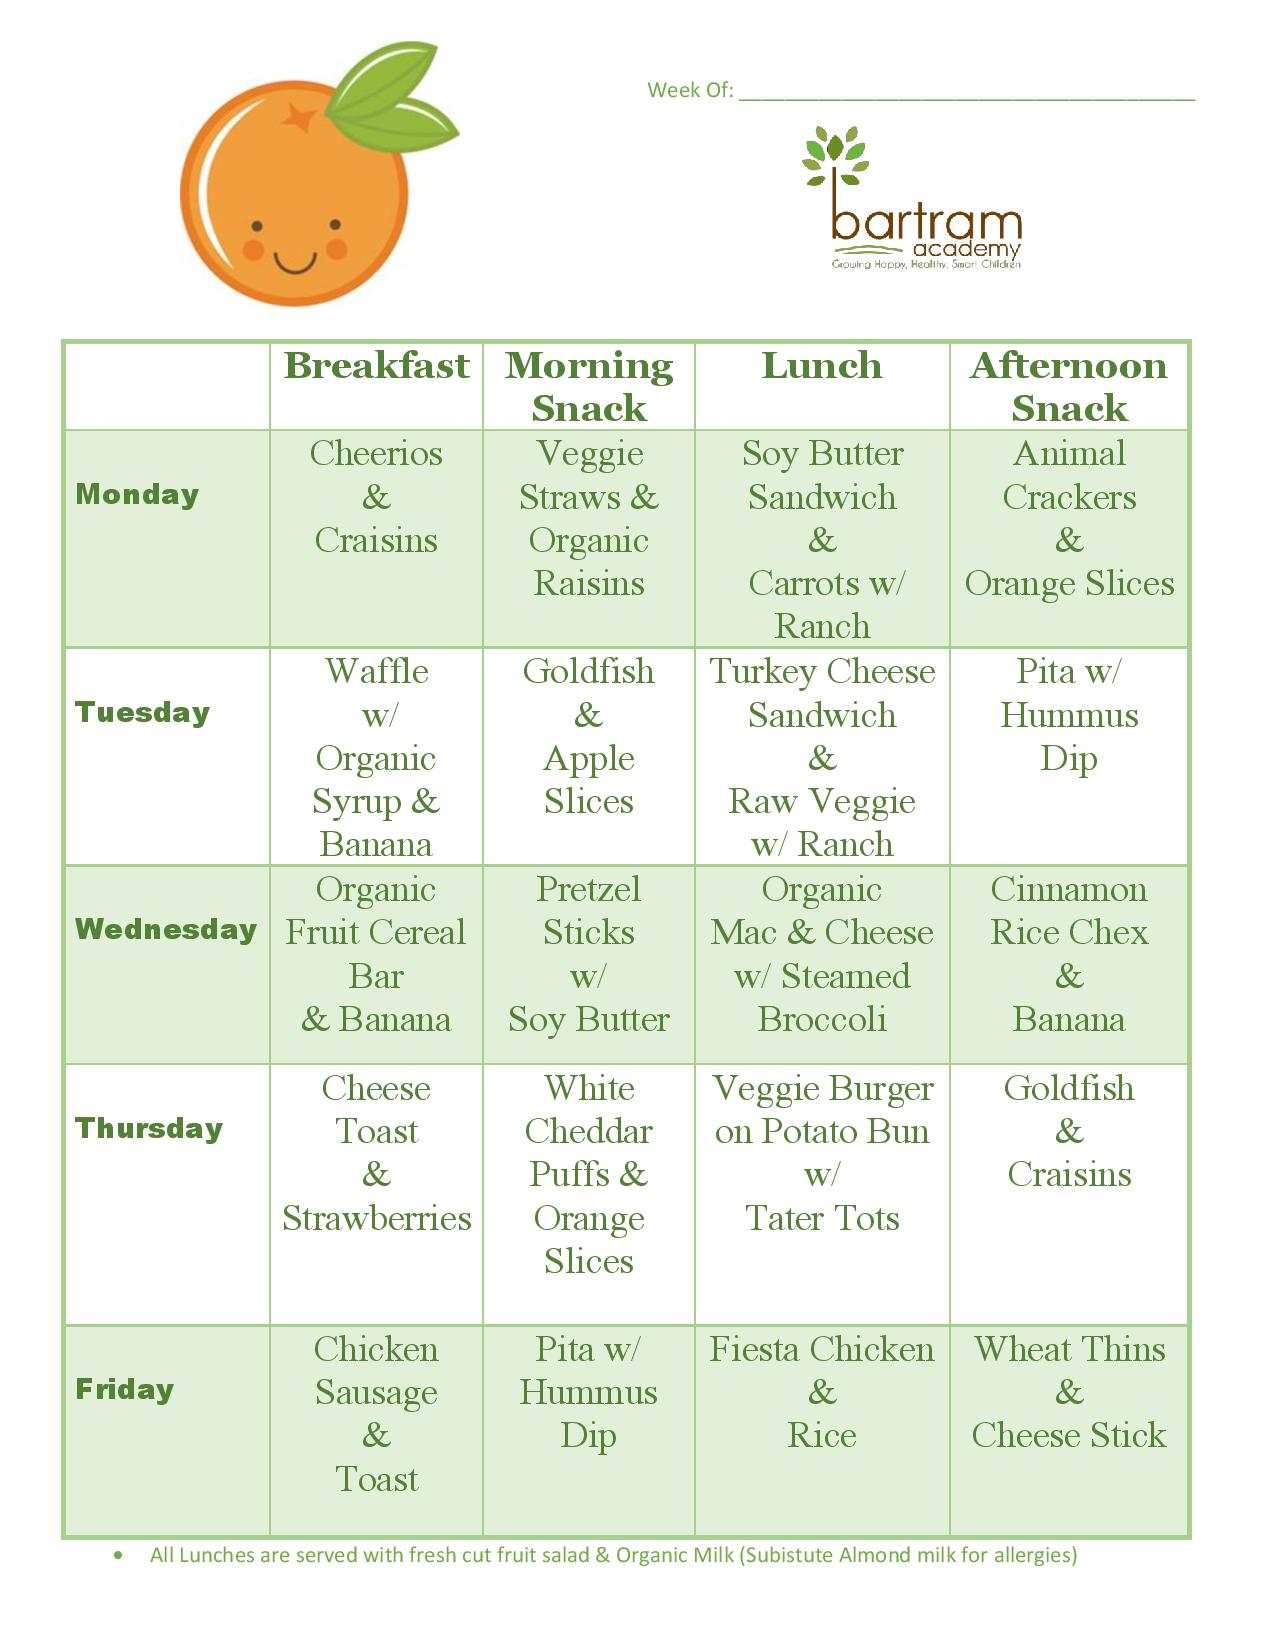 Week 2 menu at Bartram Academy